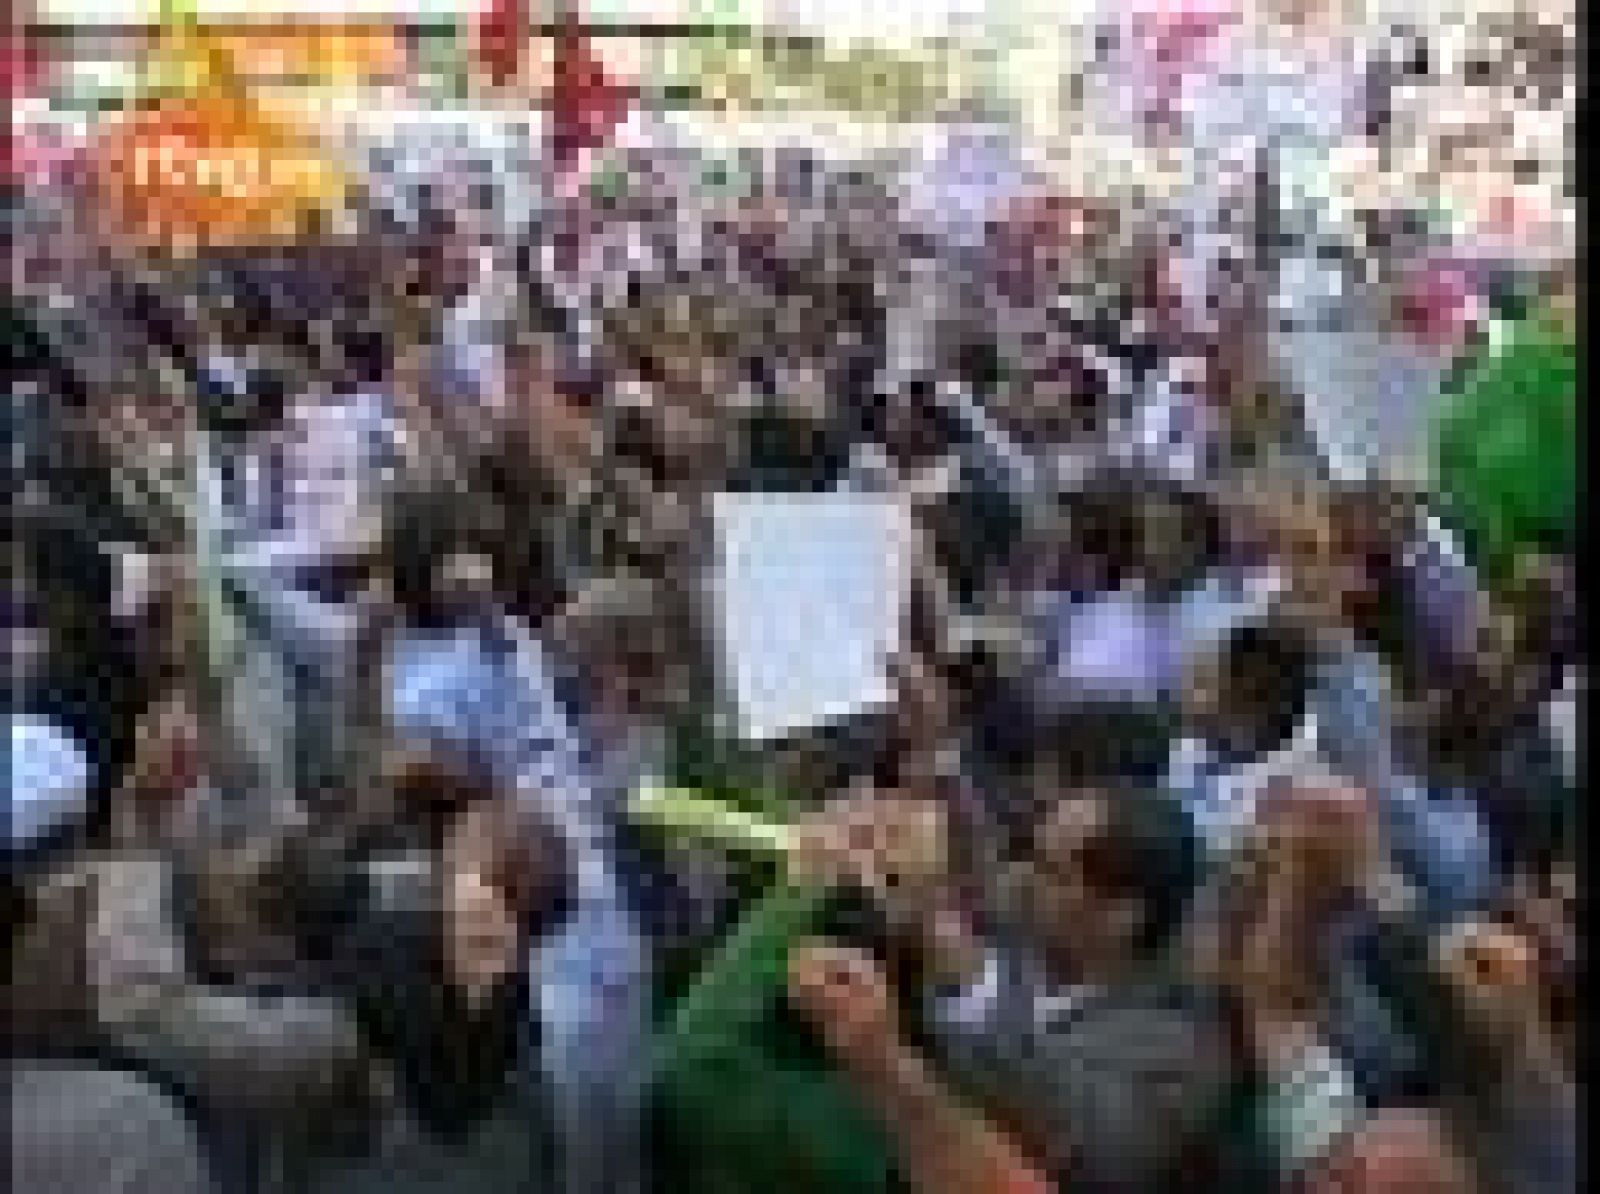 Los partidarios del presidente reelegido, Ahmadineyad, se han manifestado en el centro de la capital iraní, mientras que los seguidores del líder reformista Mousaví lo han hecho en el norte de la ciudad.